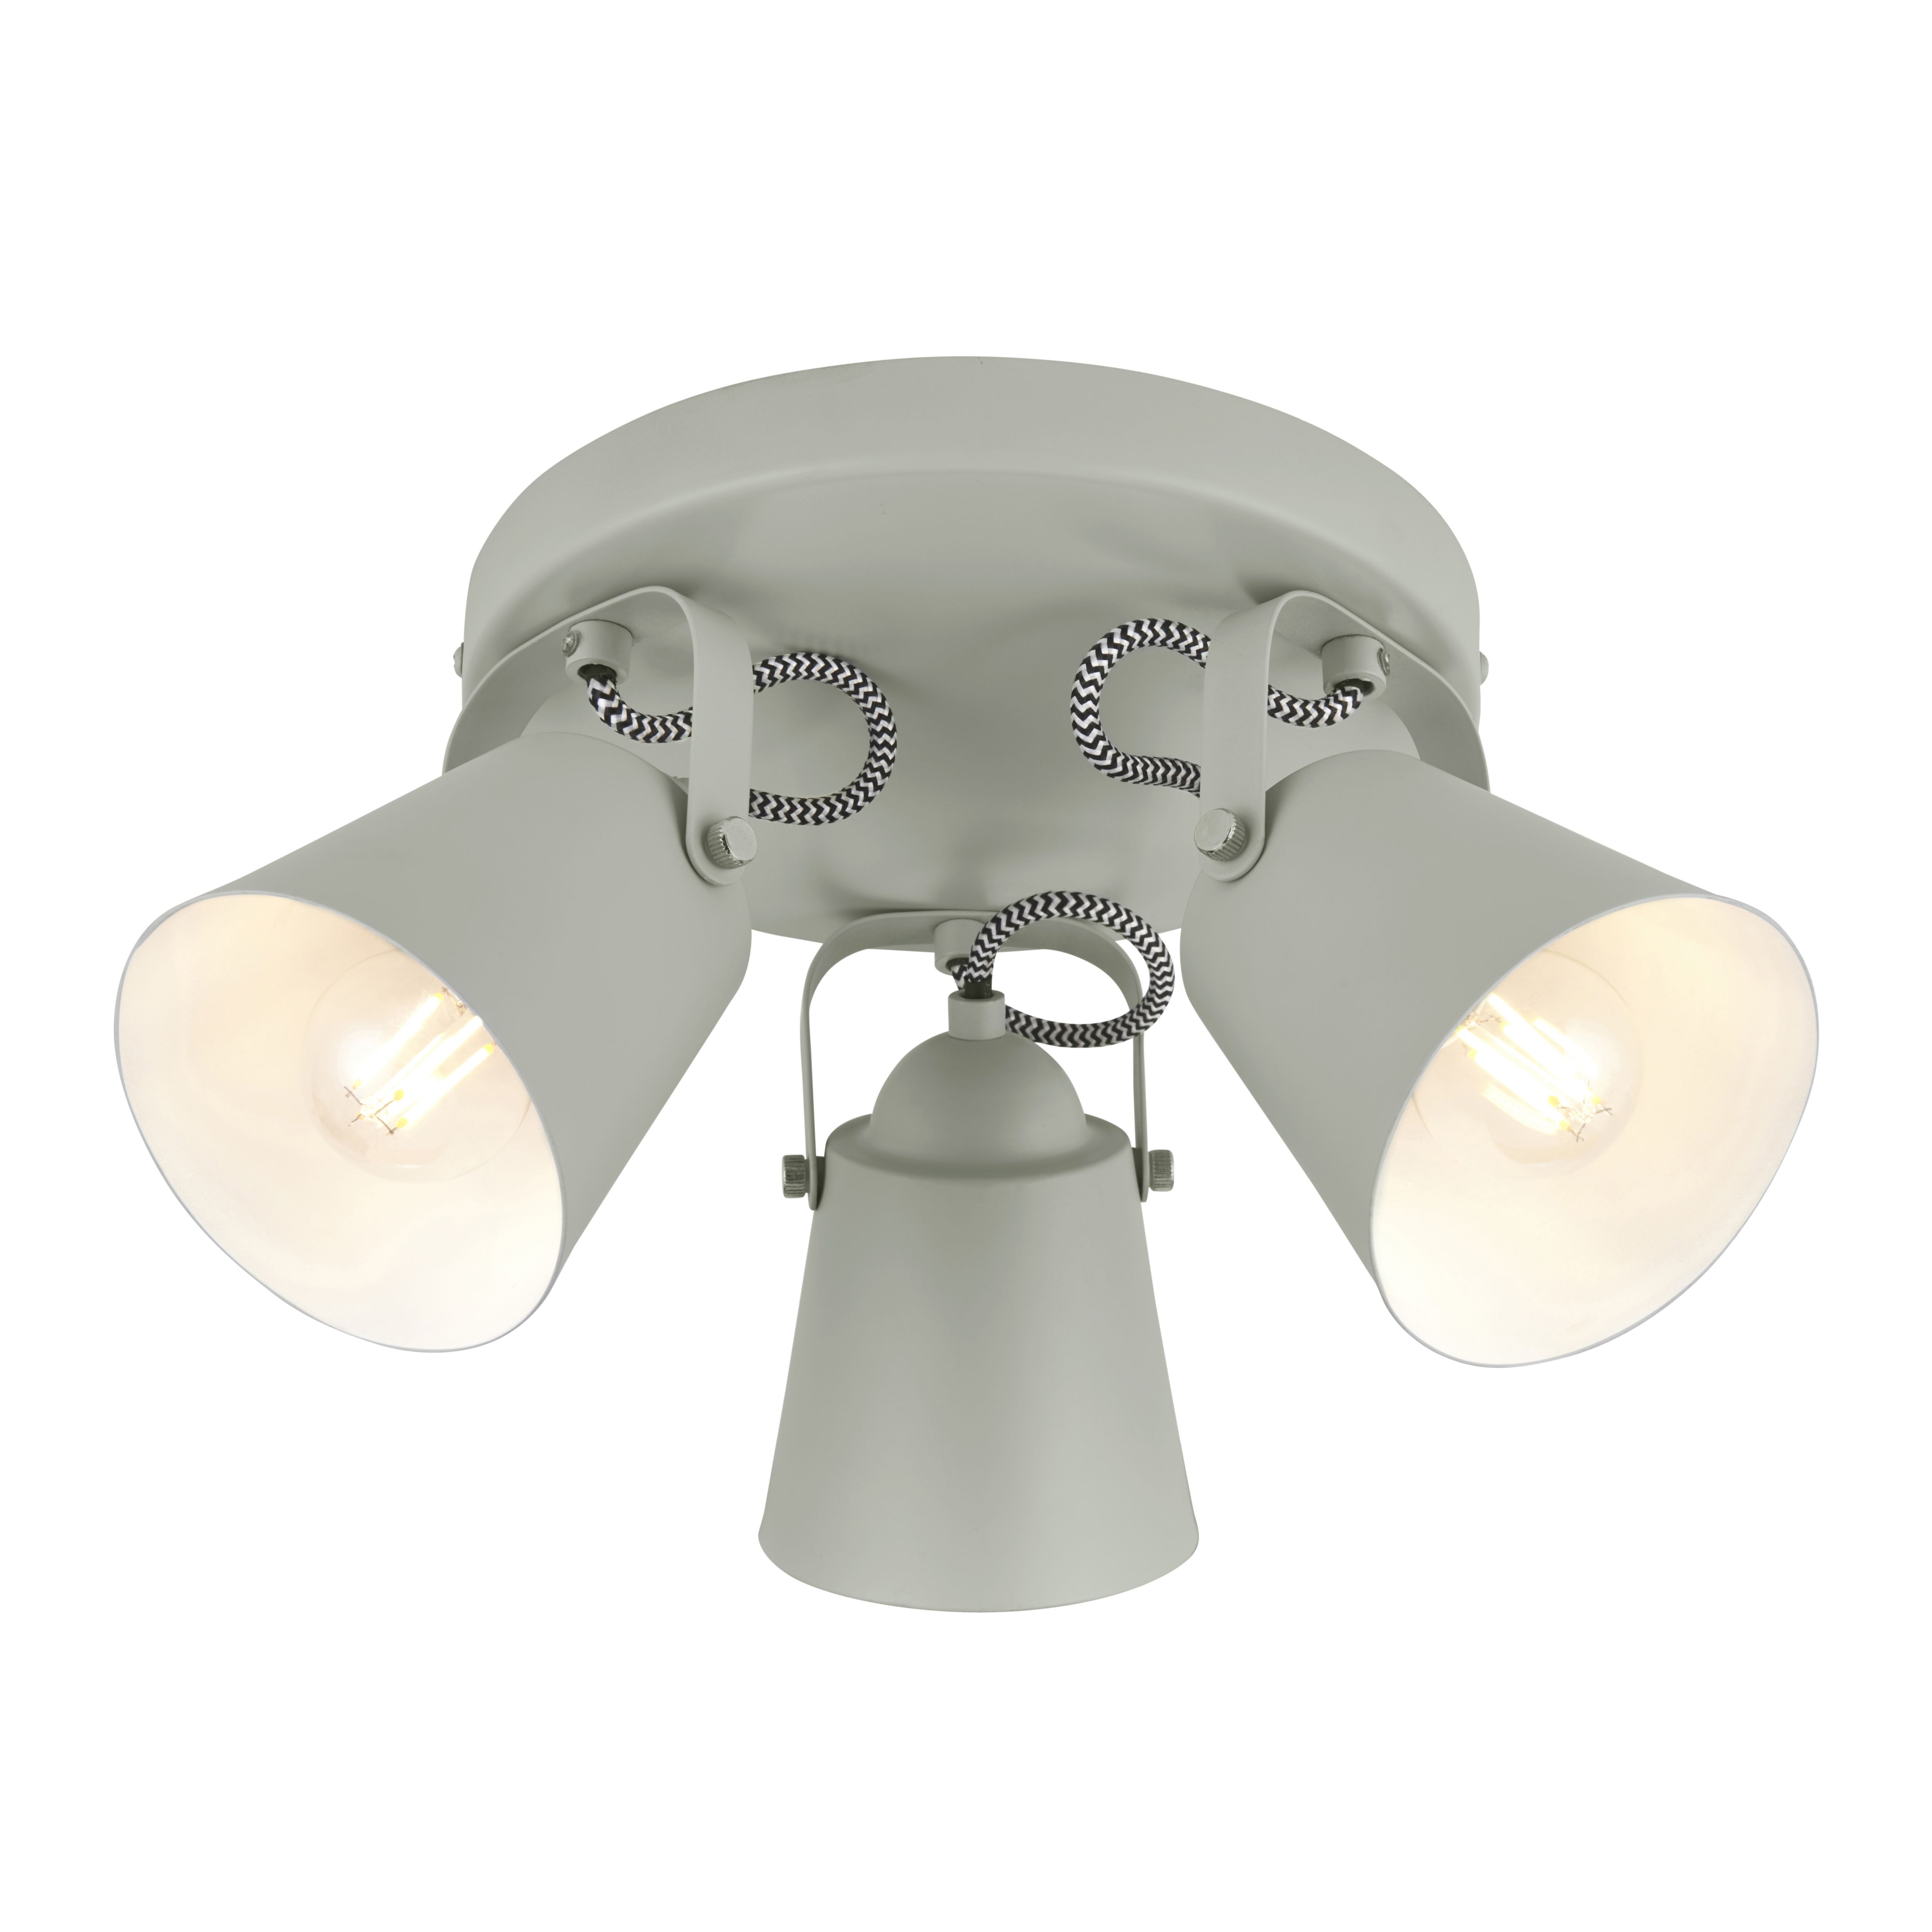 Layton Industrial Grey 3 Light Spotlight